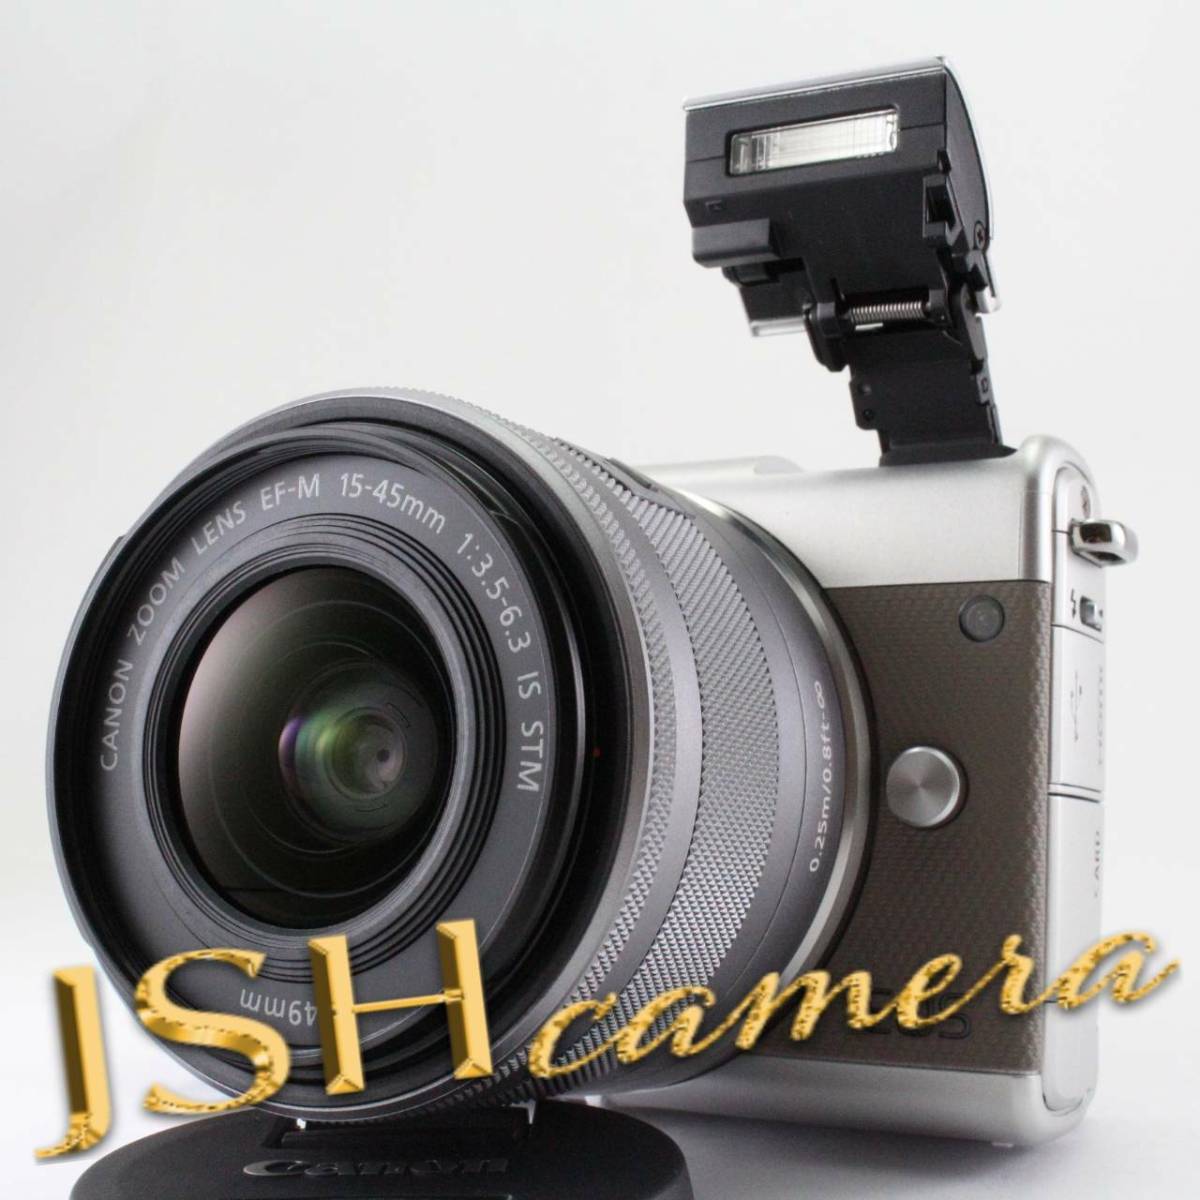 Canon ミラーレス一眼カメラ EOS M100 EF-M15-45 IS STM レンズキット